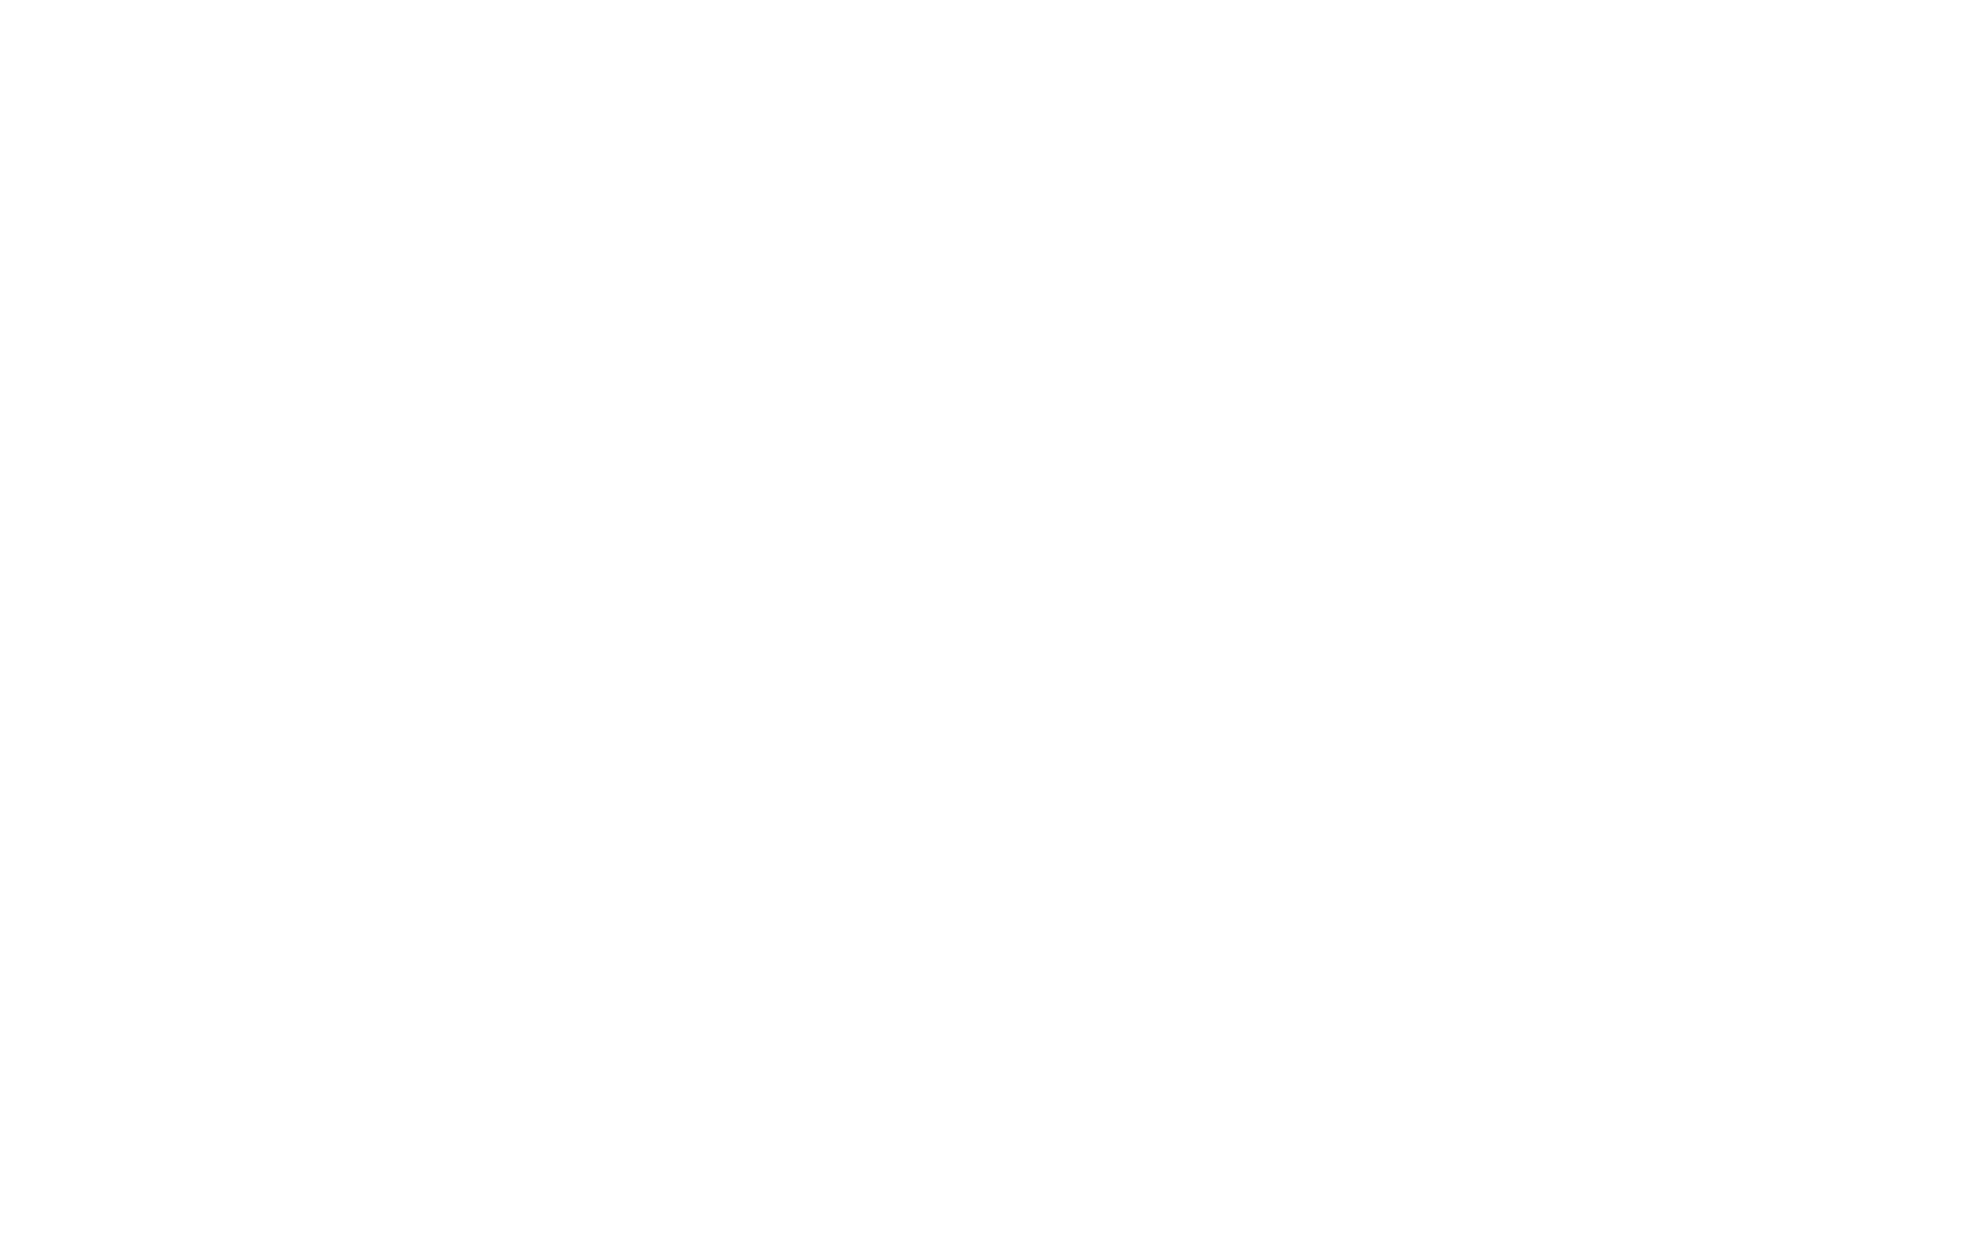 Panalux_Logo_2021_white